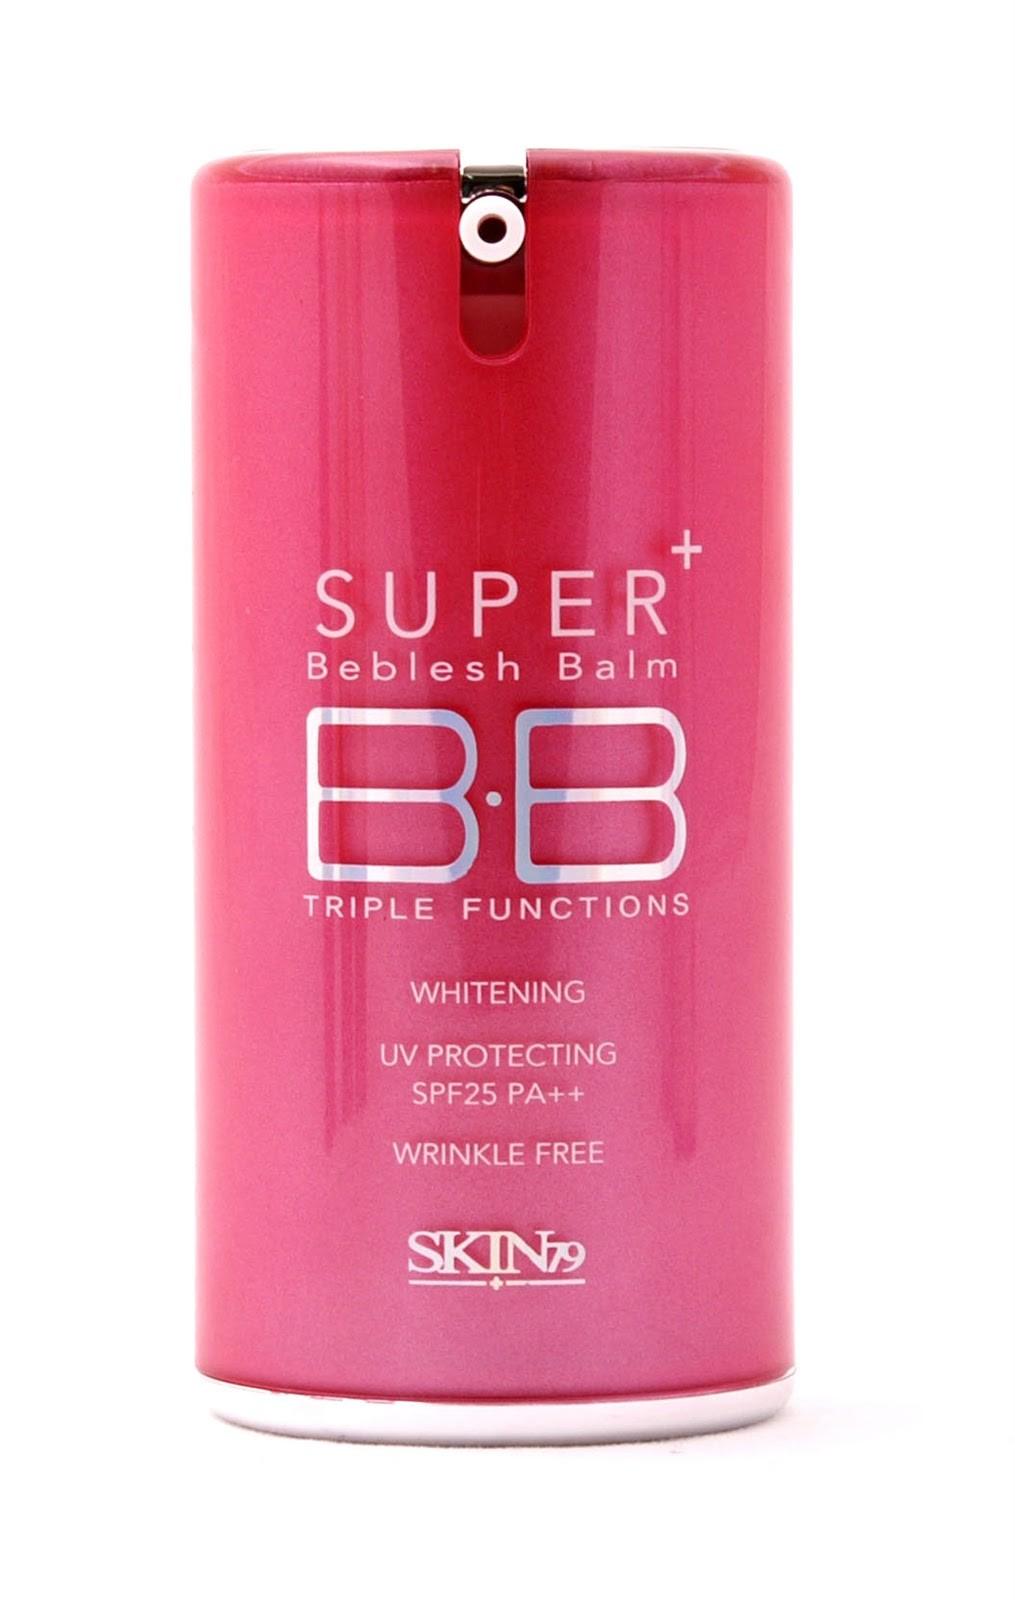 Foto Skin79 - BB Cream Hot Pink Super Plus Beblesh Balm